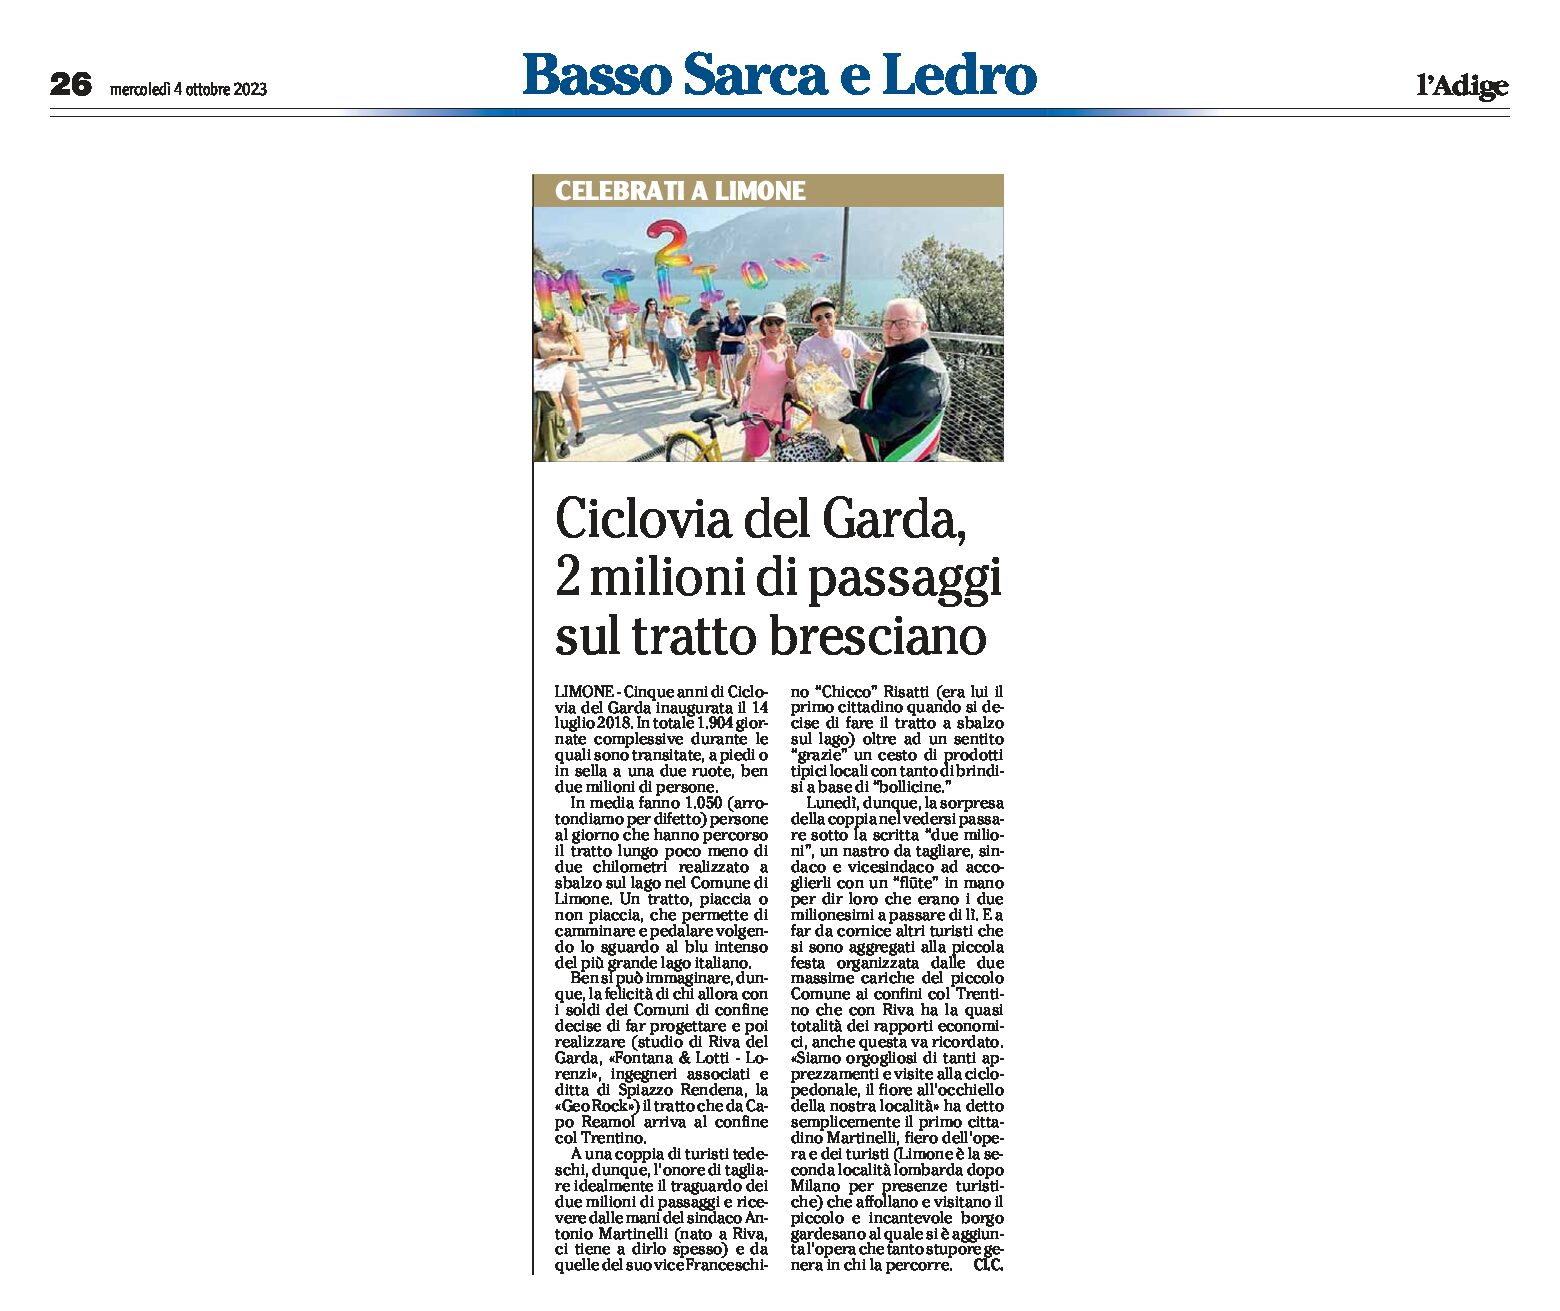 Ciclovia del Garda: Limone festeggia 2 milioni di passaggi sul tratto bresciano dal 2018